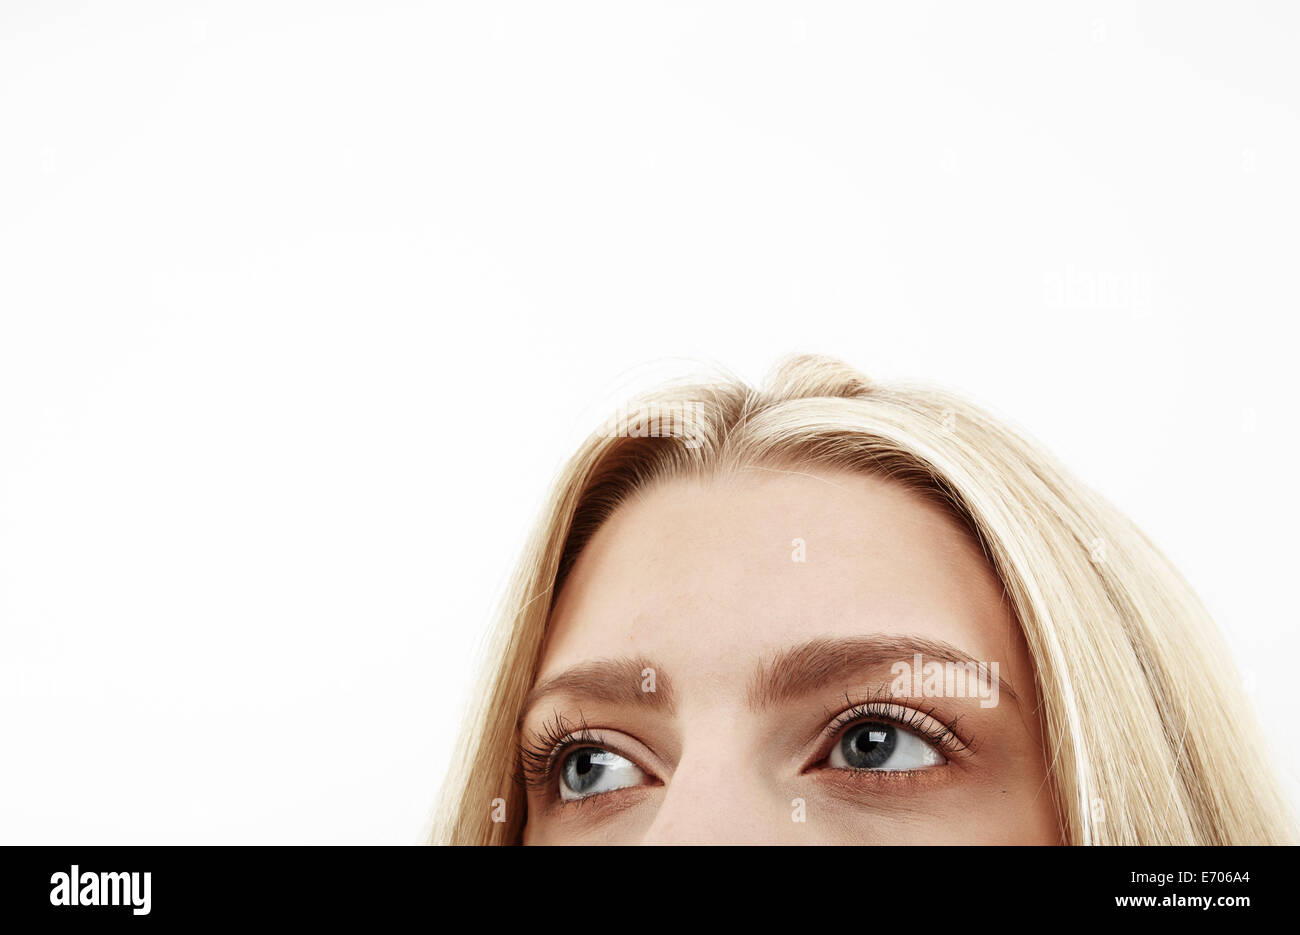 Portrait close up portrait of young woman's eyes Banque D'Images